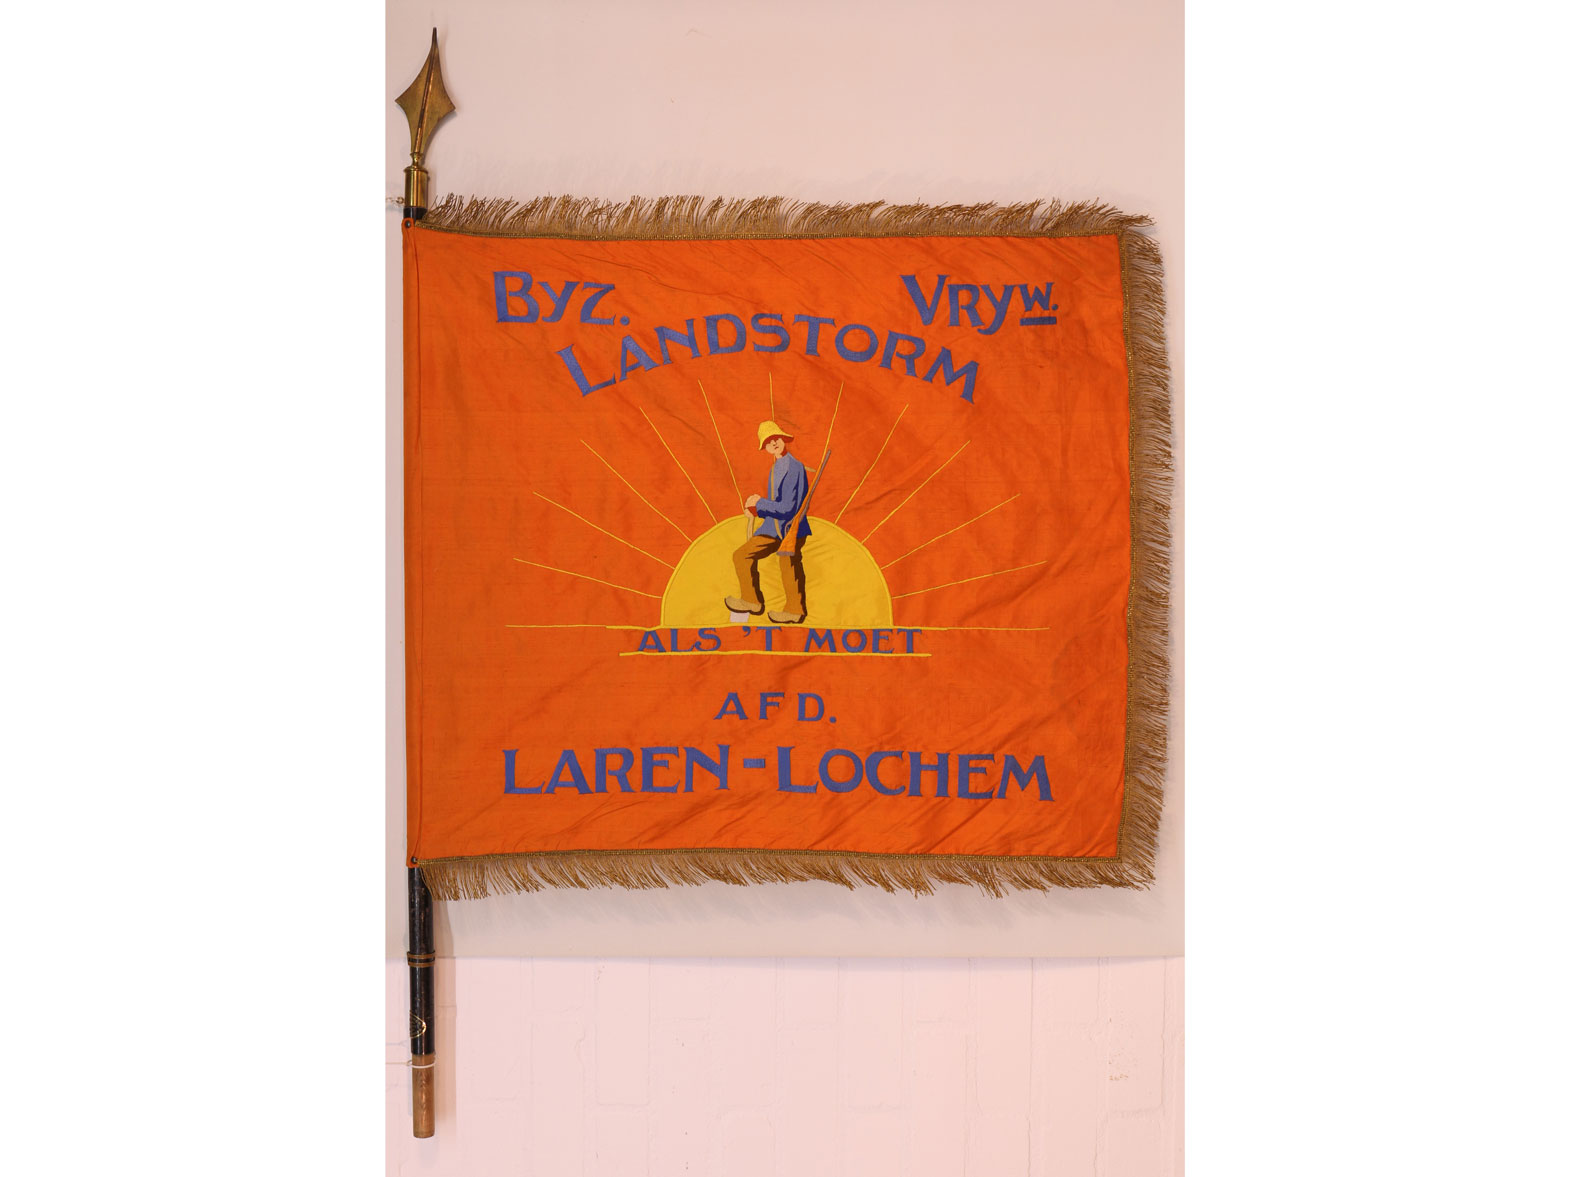 Vaandel van de BVL Laren Lochem